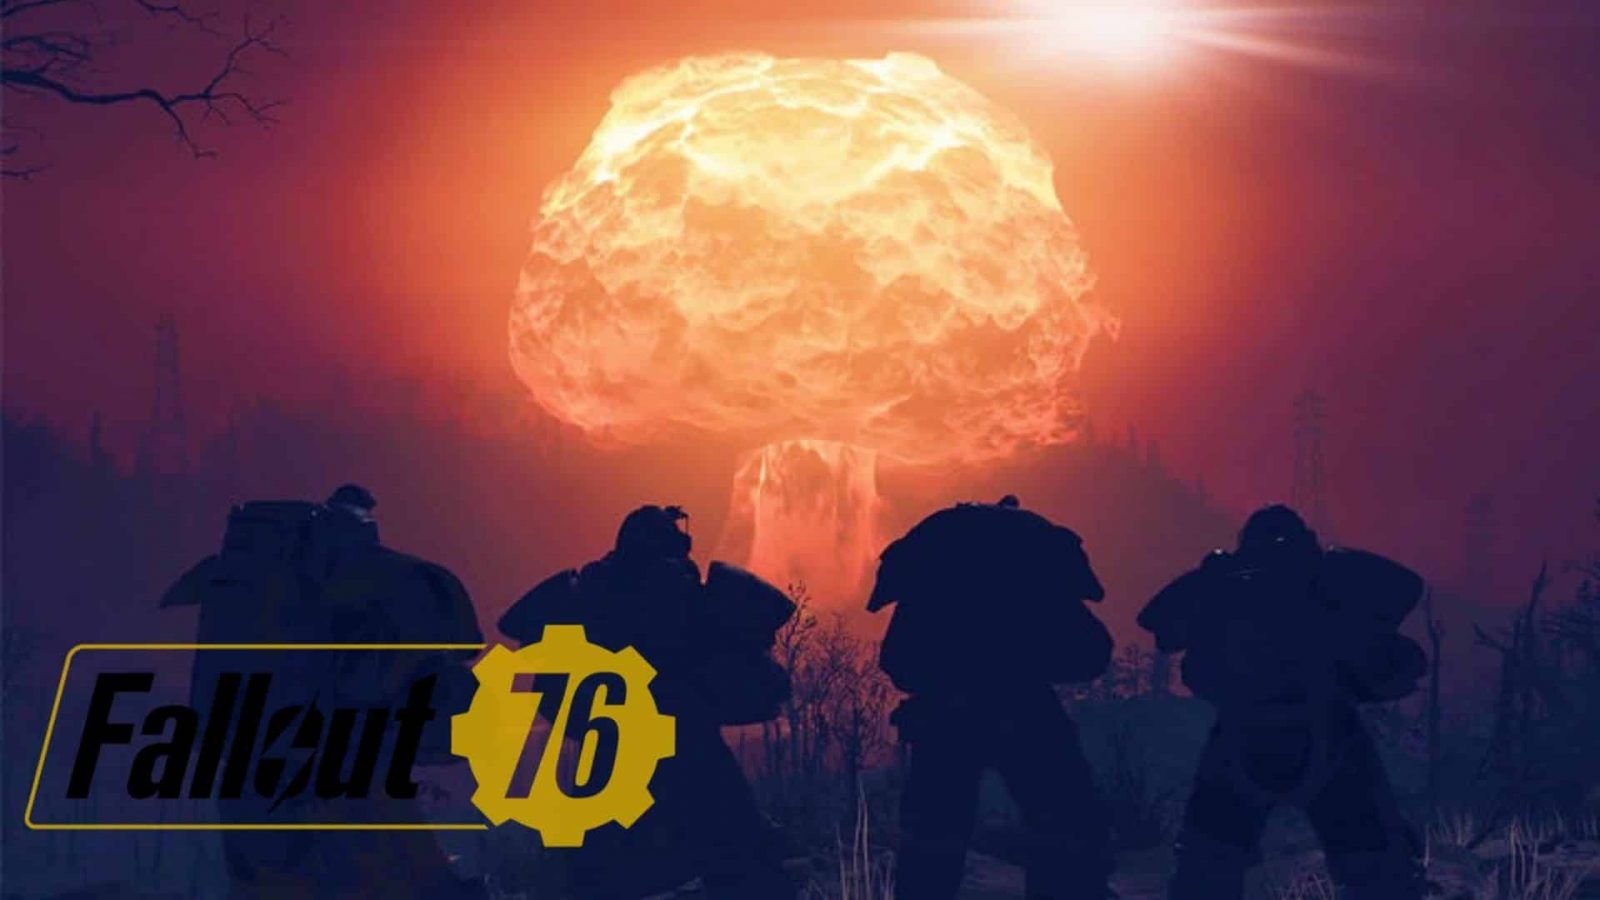 Fallout 76 Nuke Codes